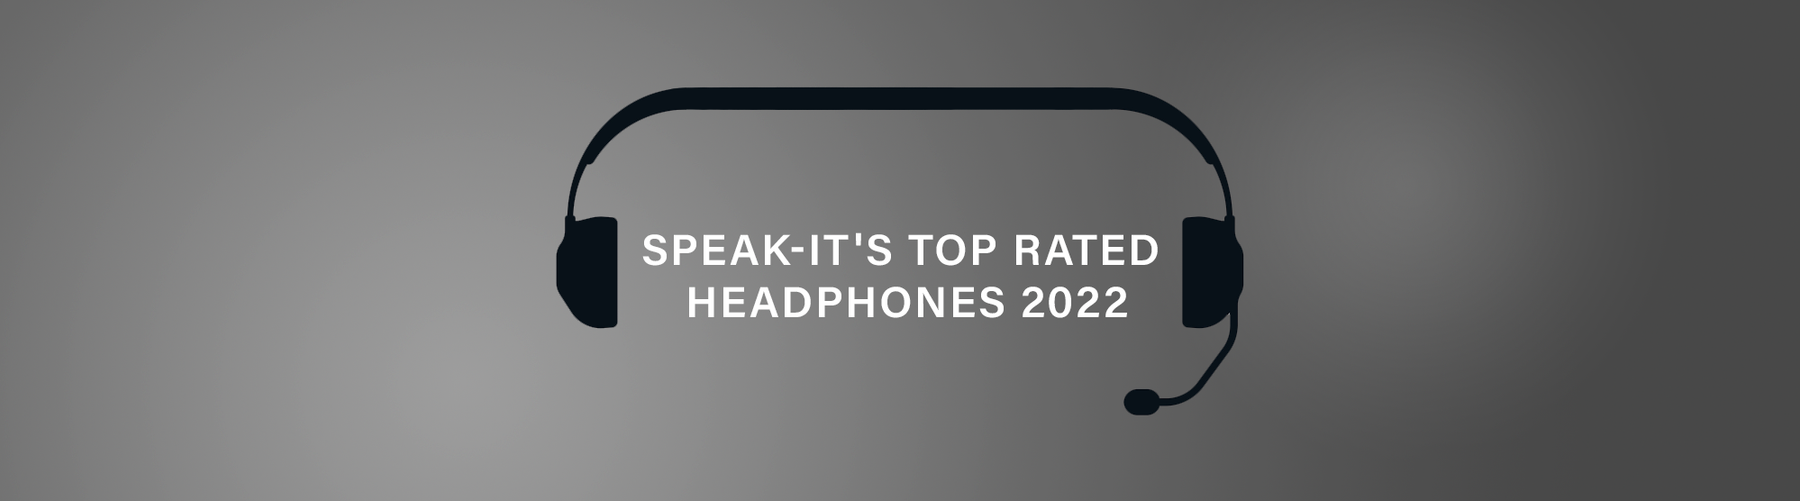 Speak-IT's Top Rated Headphones 2022